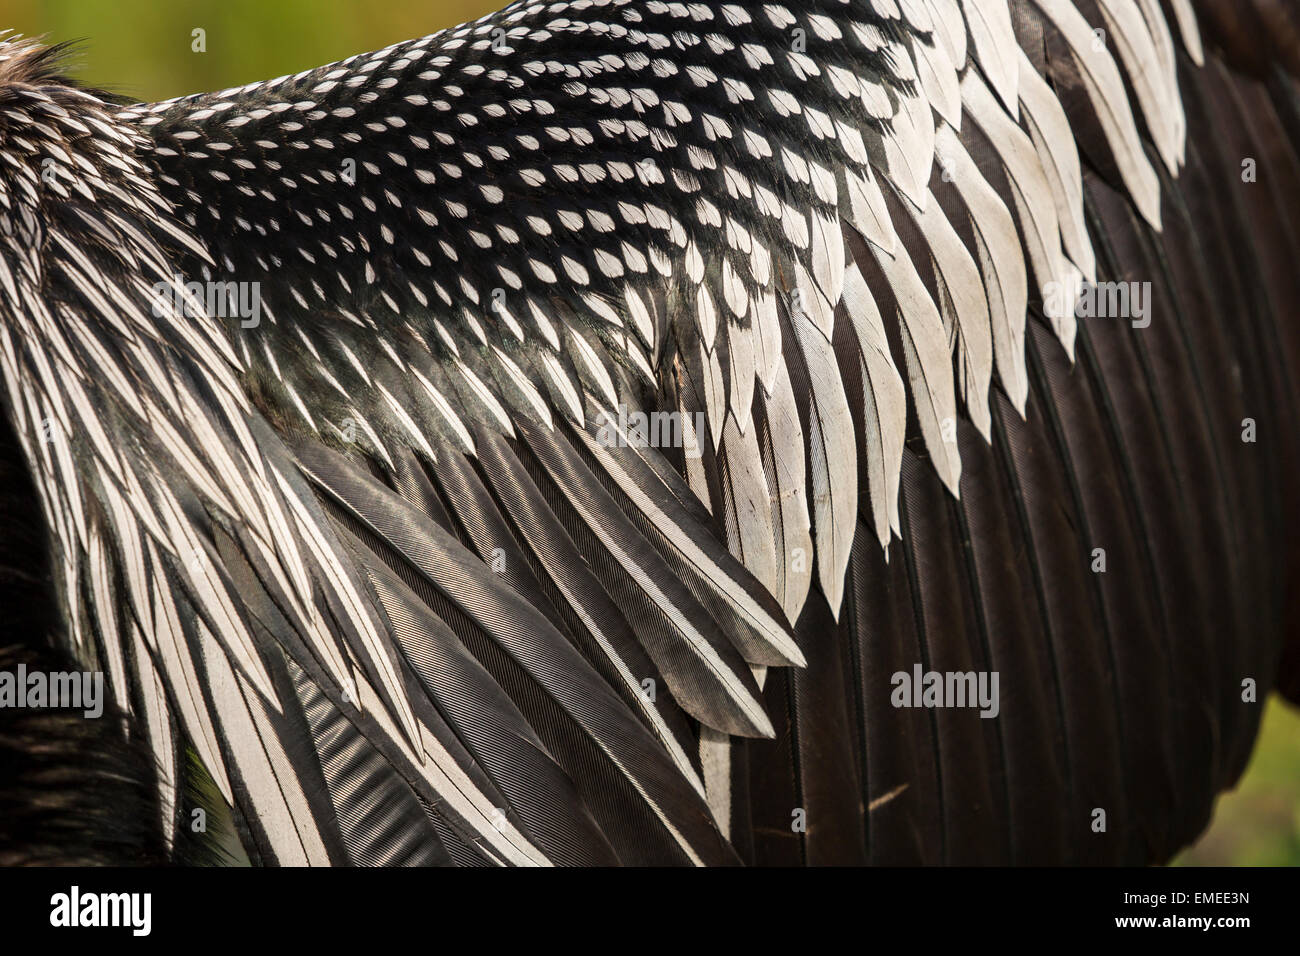 Drying wings of an Anhinga or American darter (Anhinga anhinga) in the Florida Everglades National Park, USA. Stock Photo